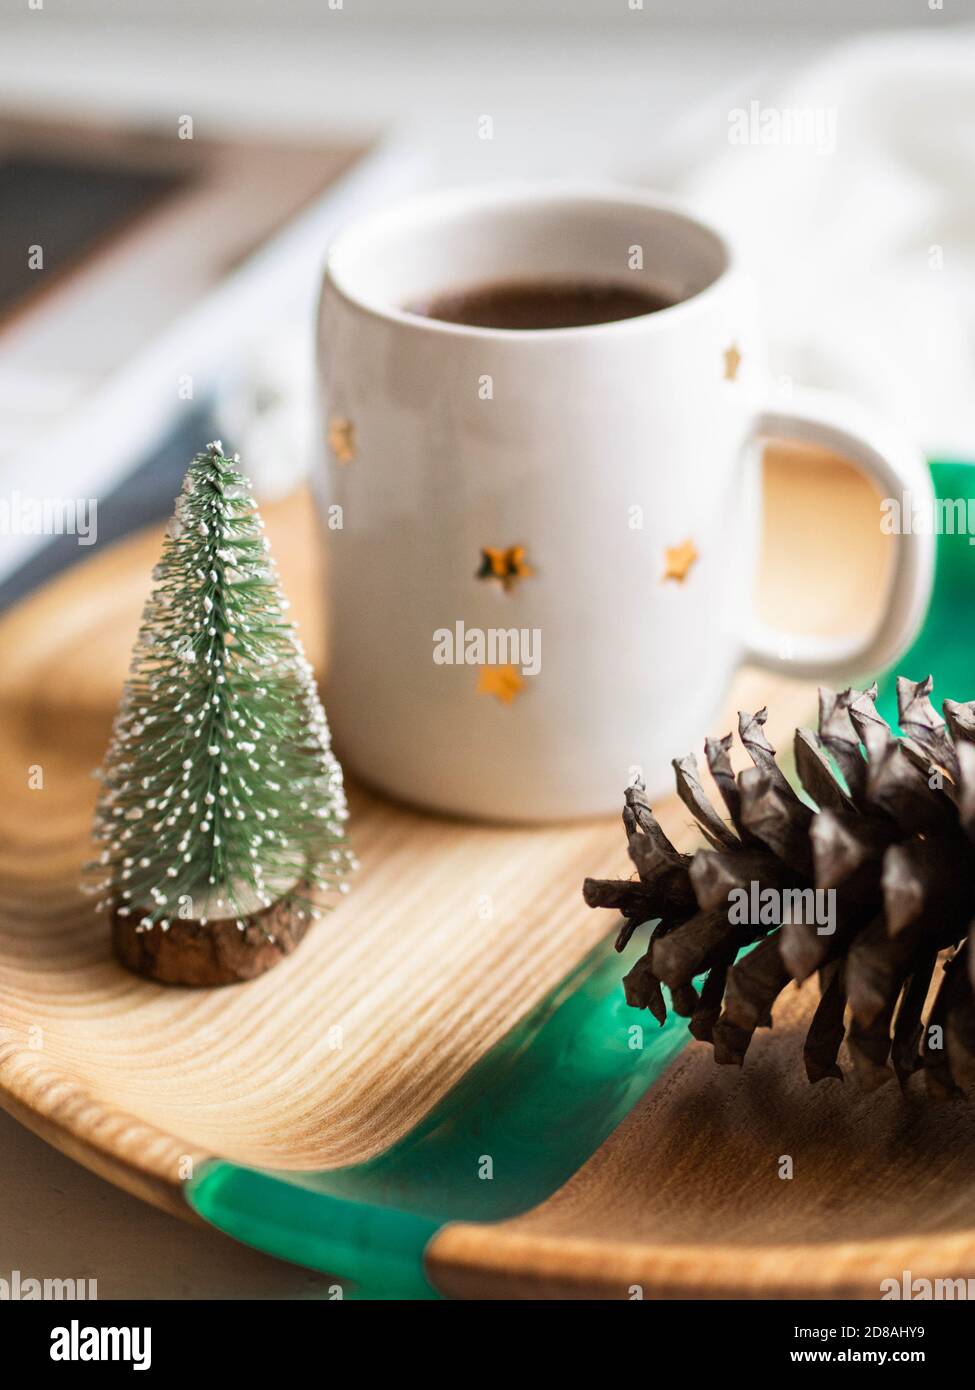 Tazza in ceramica con stelle con caffè nero, albero di natale e cono di  pino su un vassoio su sfondo chiaro. Stile di vita. Vista frontale Foto  stock - Alamy